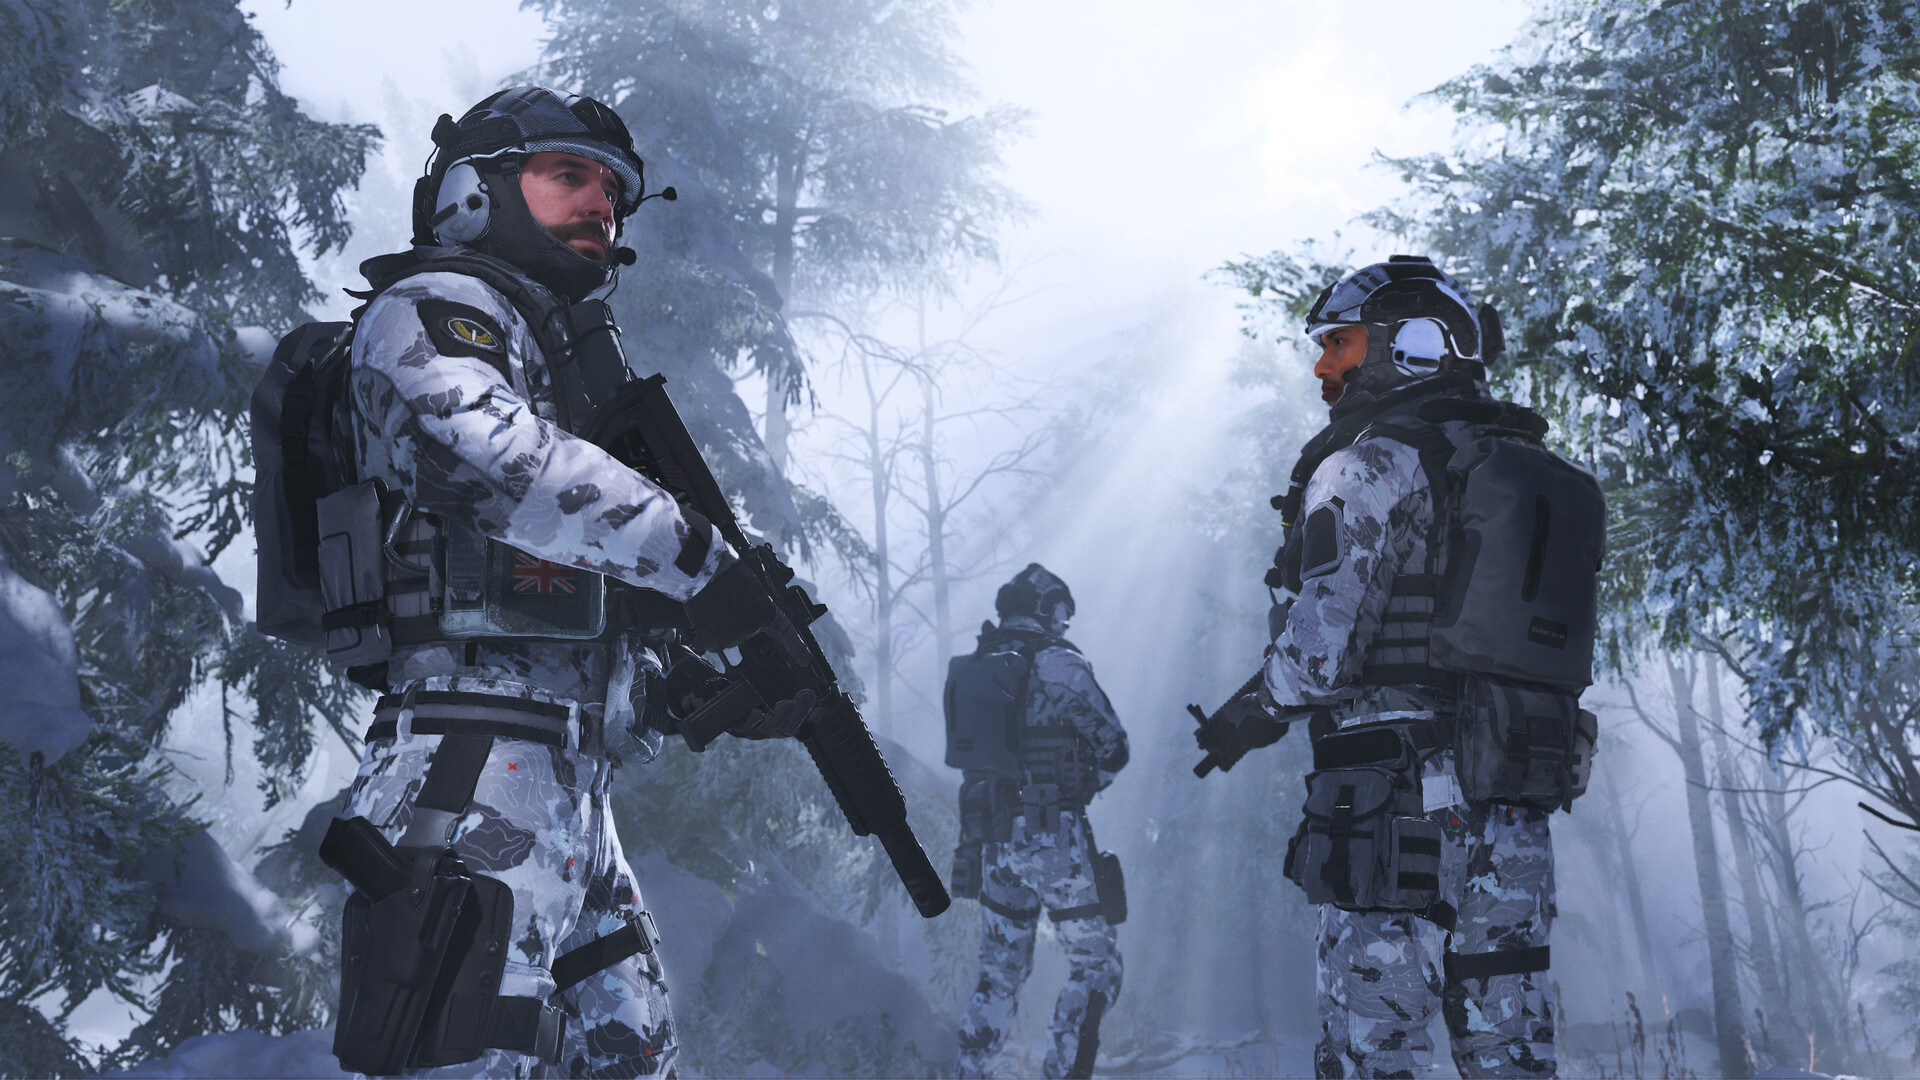 COD Modern Warfare 3 PC Download  Call of duty, Modern warfare